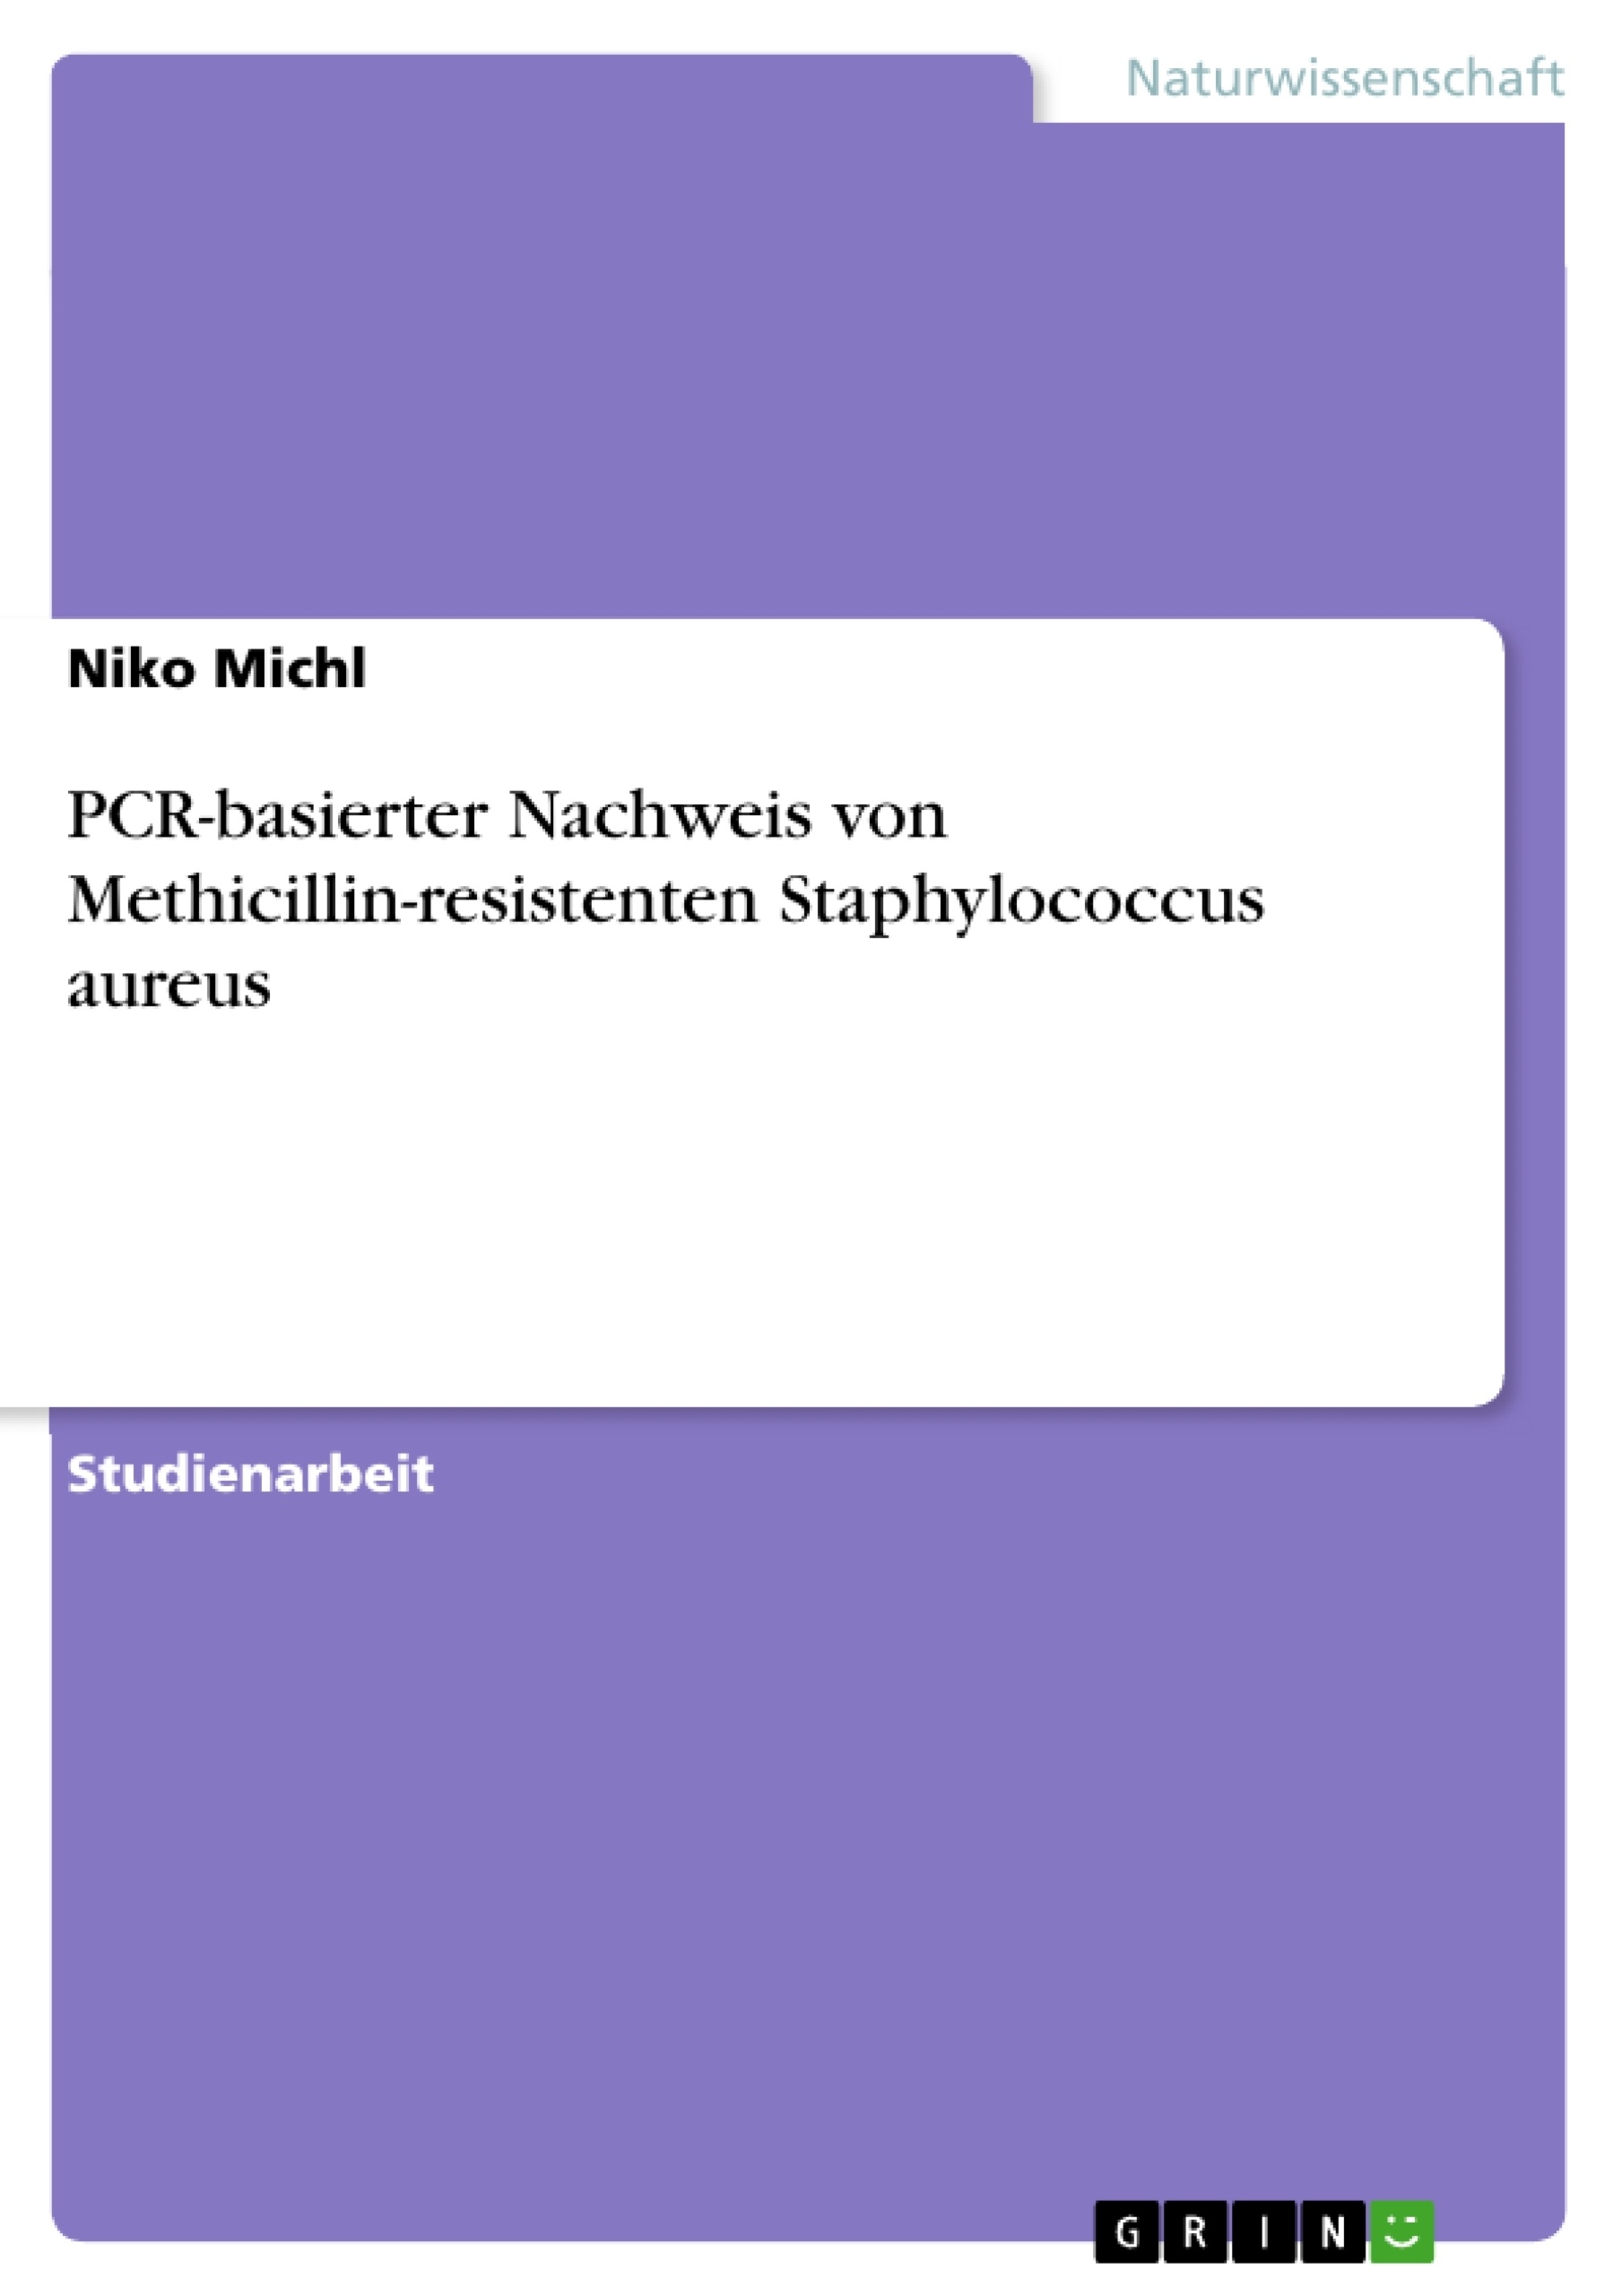 Título: PCR-basierter Nachweis von Methicillin-resistenten Staphylococcus aureus